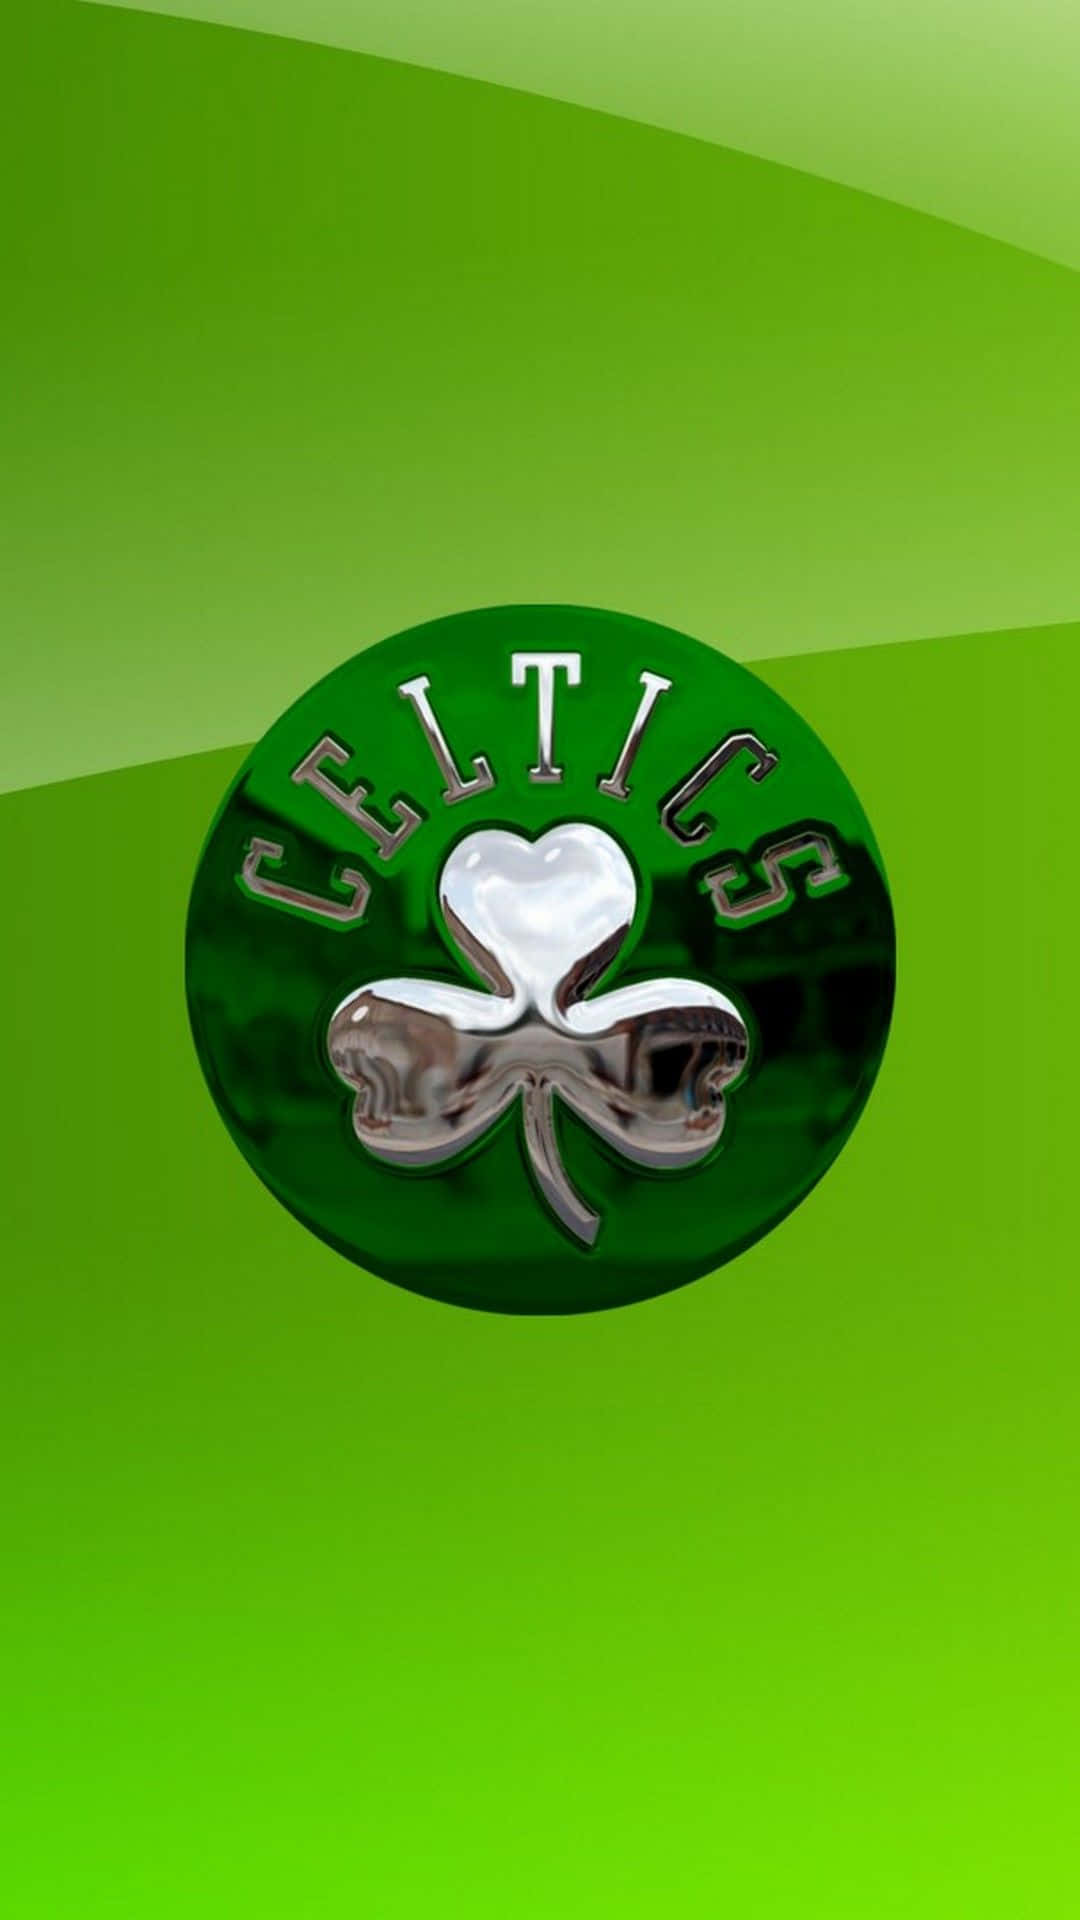 Keltischeskleeblatt-logo Wallpaper